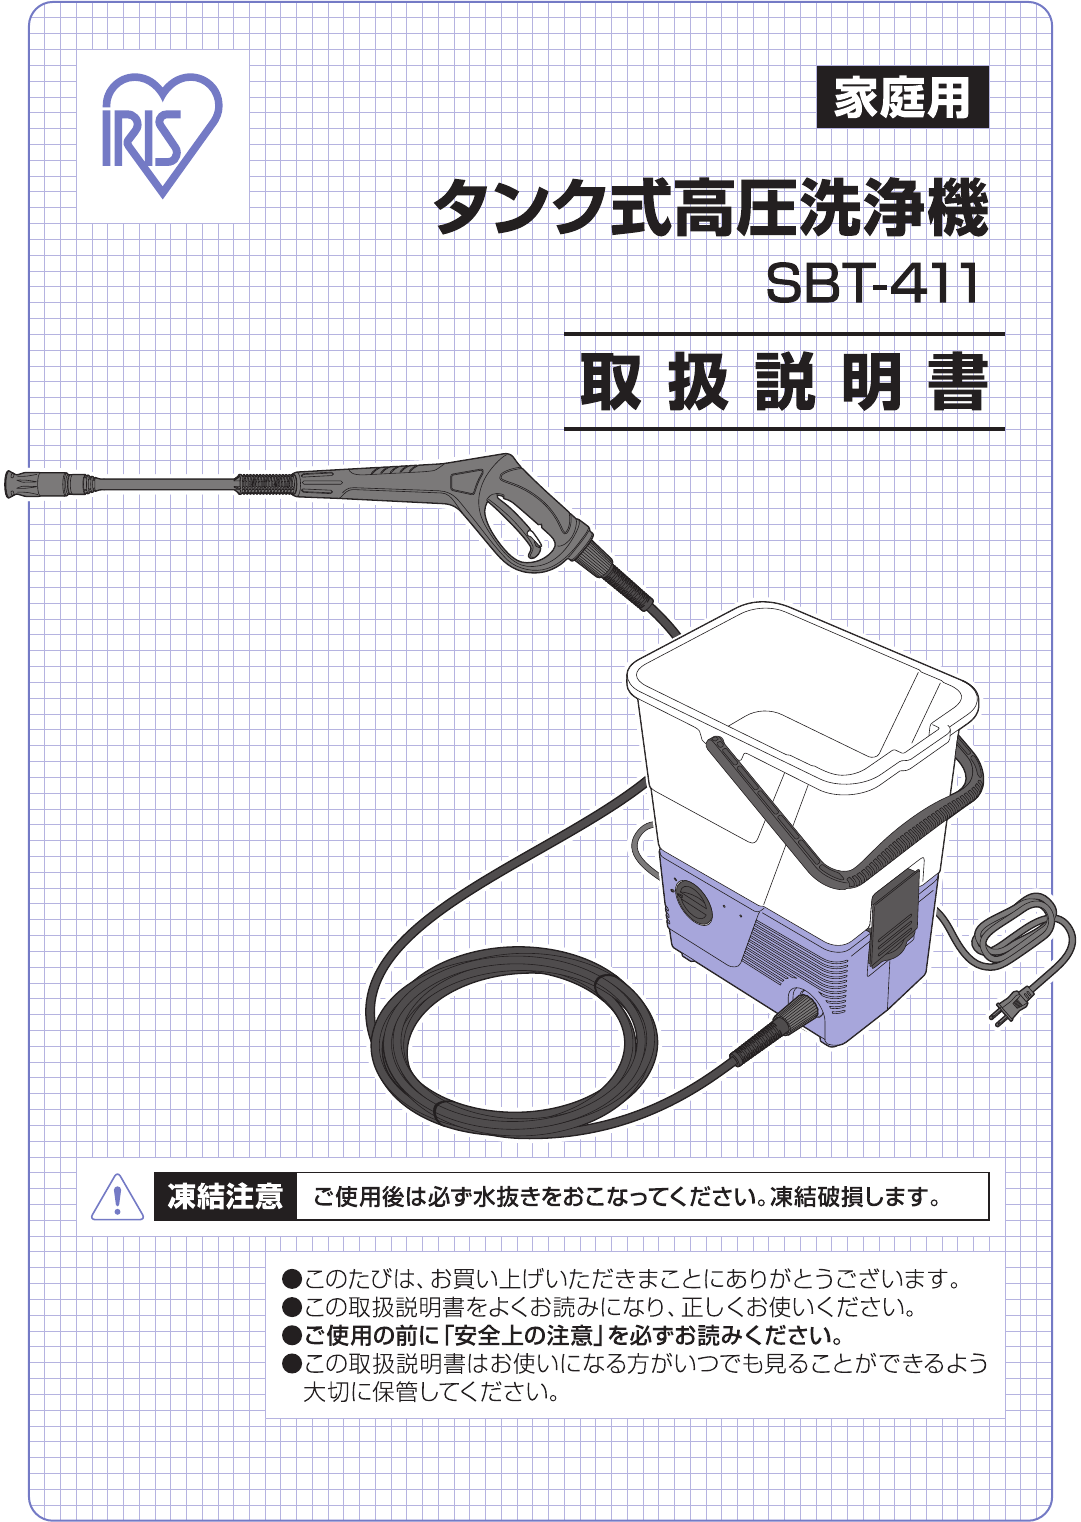 説明書 アイリスオーヤ SBT-411 圧力洗浄機